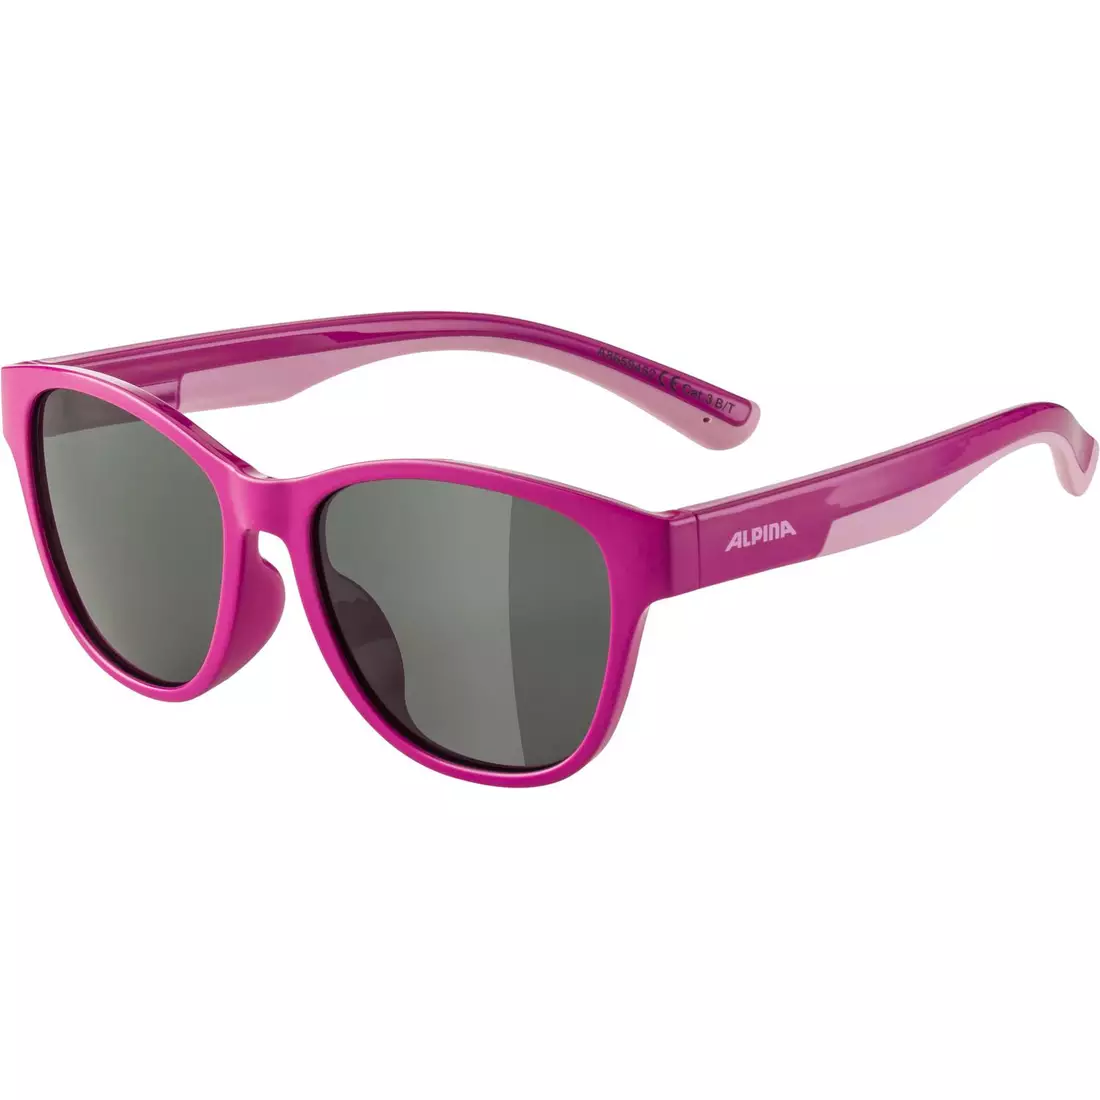 ALPINA FLEXXY COOL KIDS II dětské cyklistické/sportovní brýle, pink-rose gloss